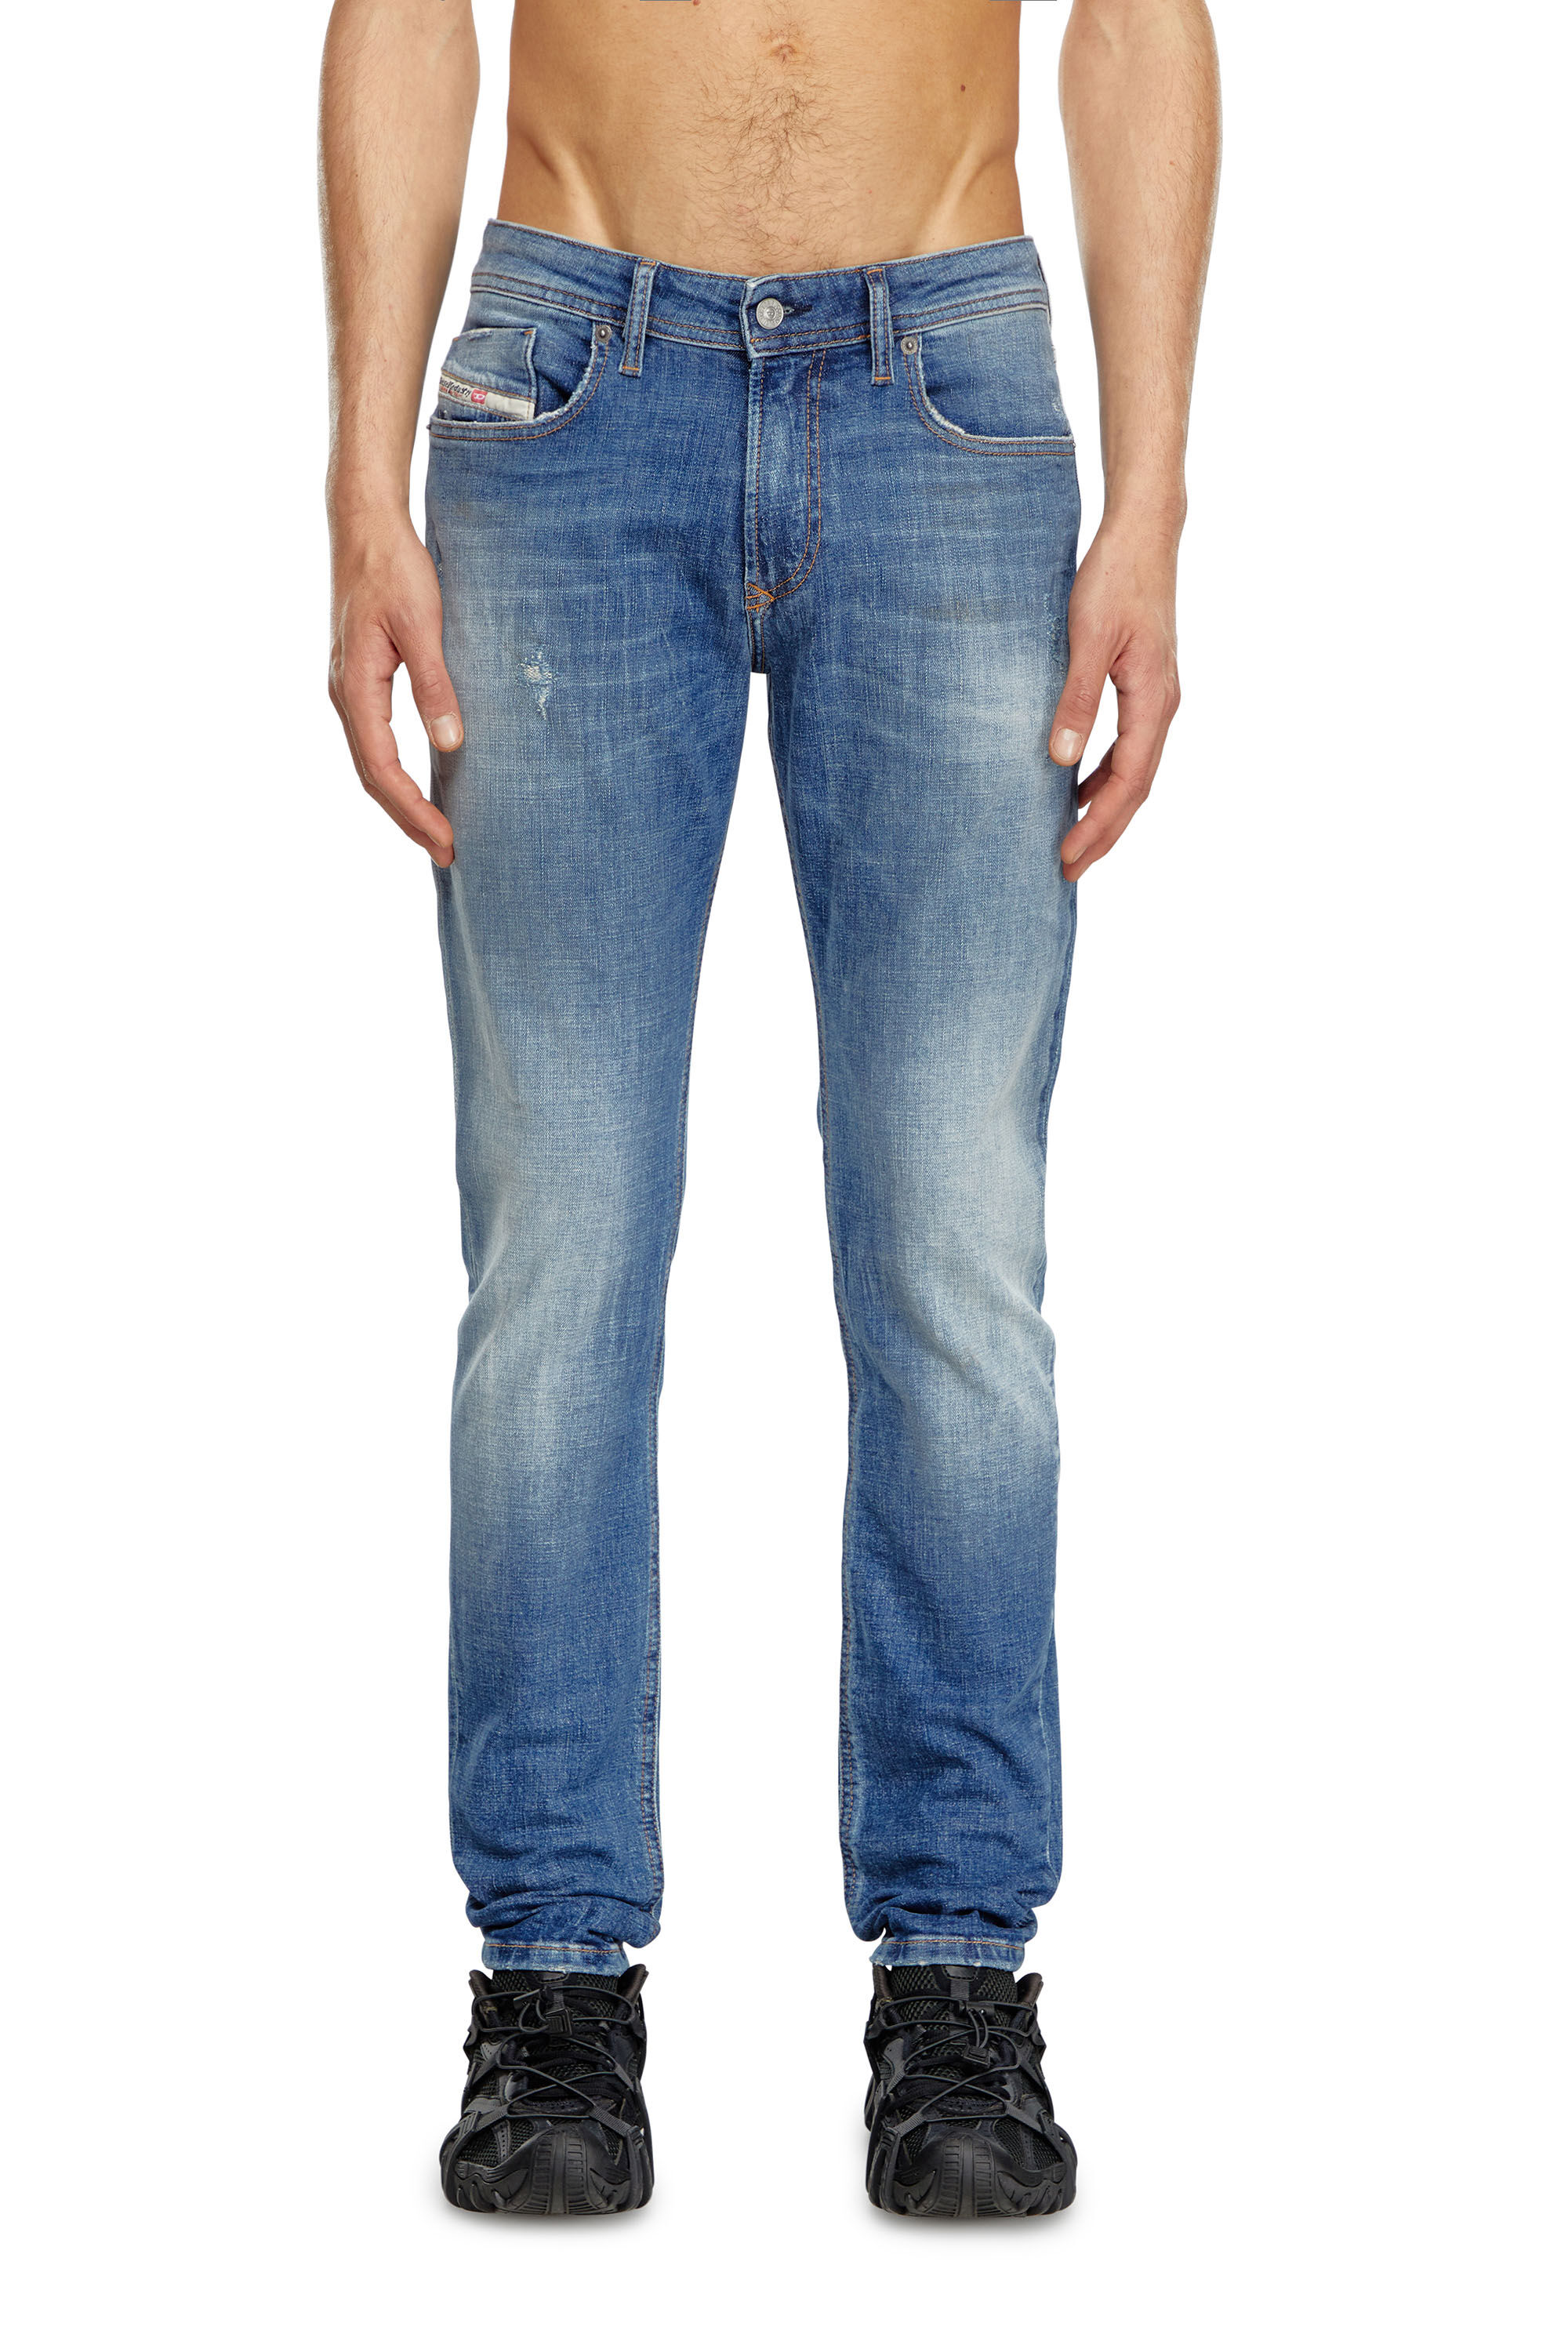 Men's Skinny Jeans | Medium blue | Diesel 1979 Sleenker